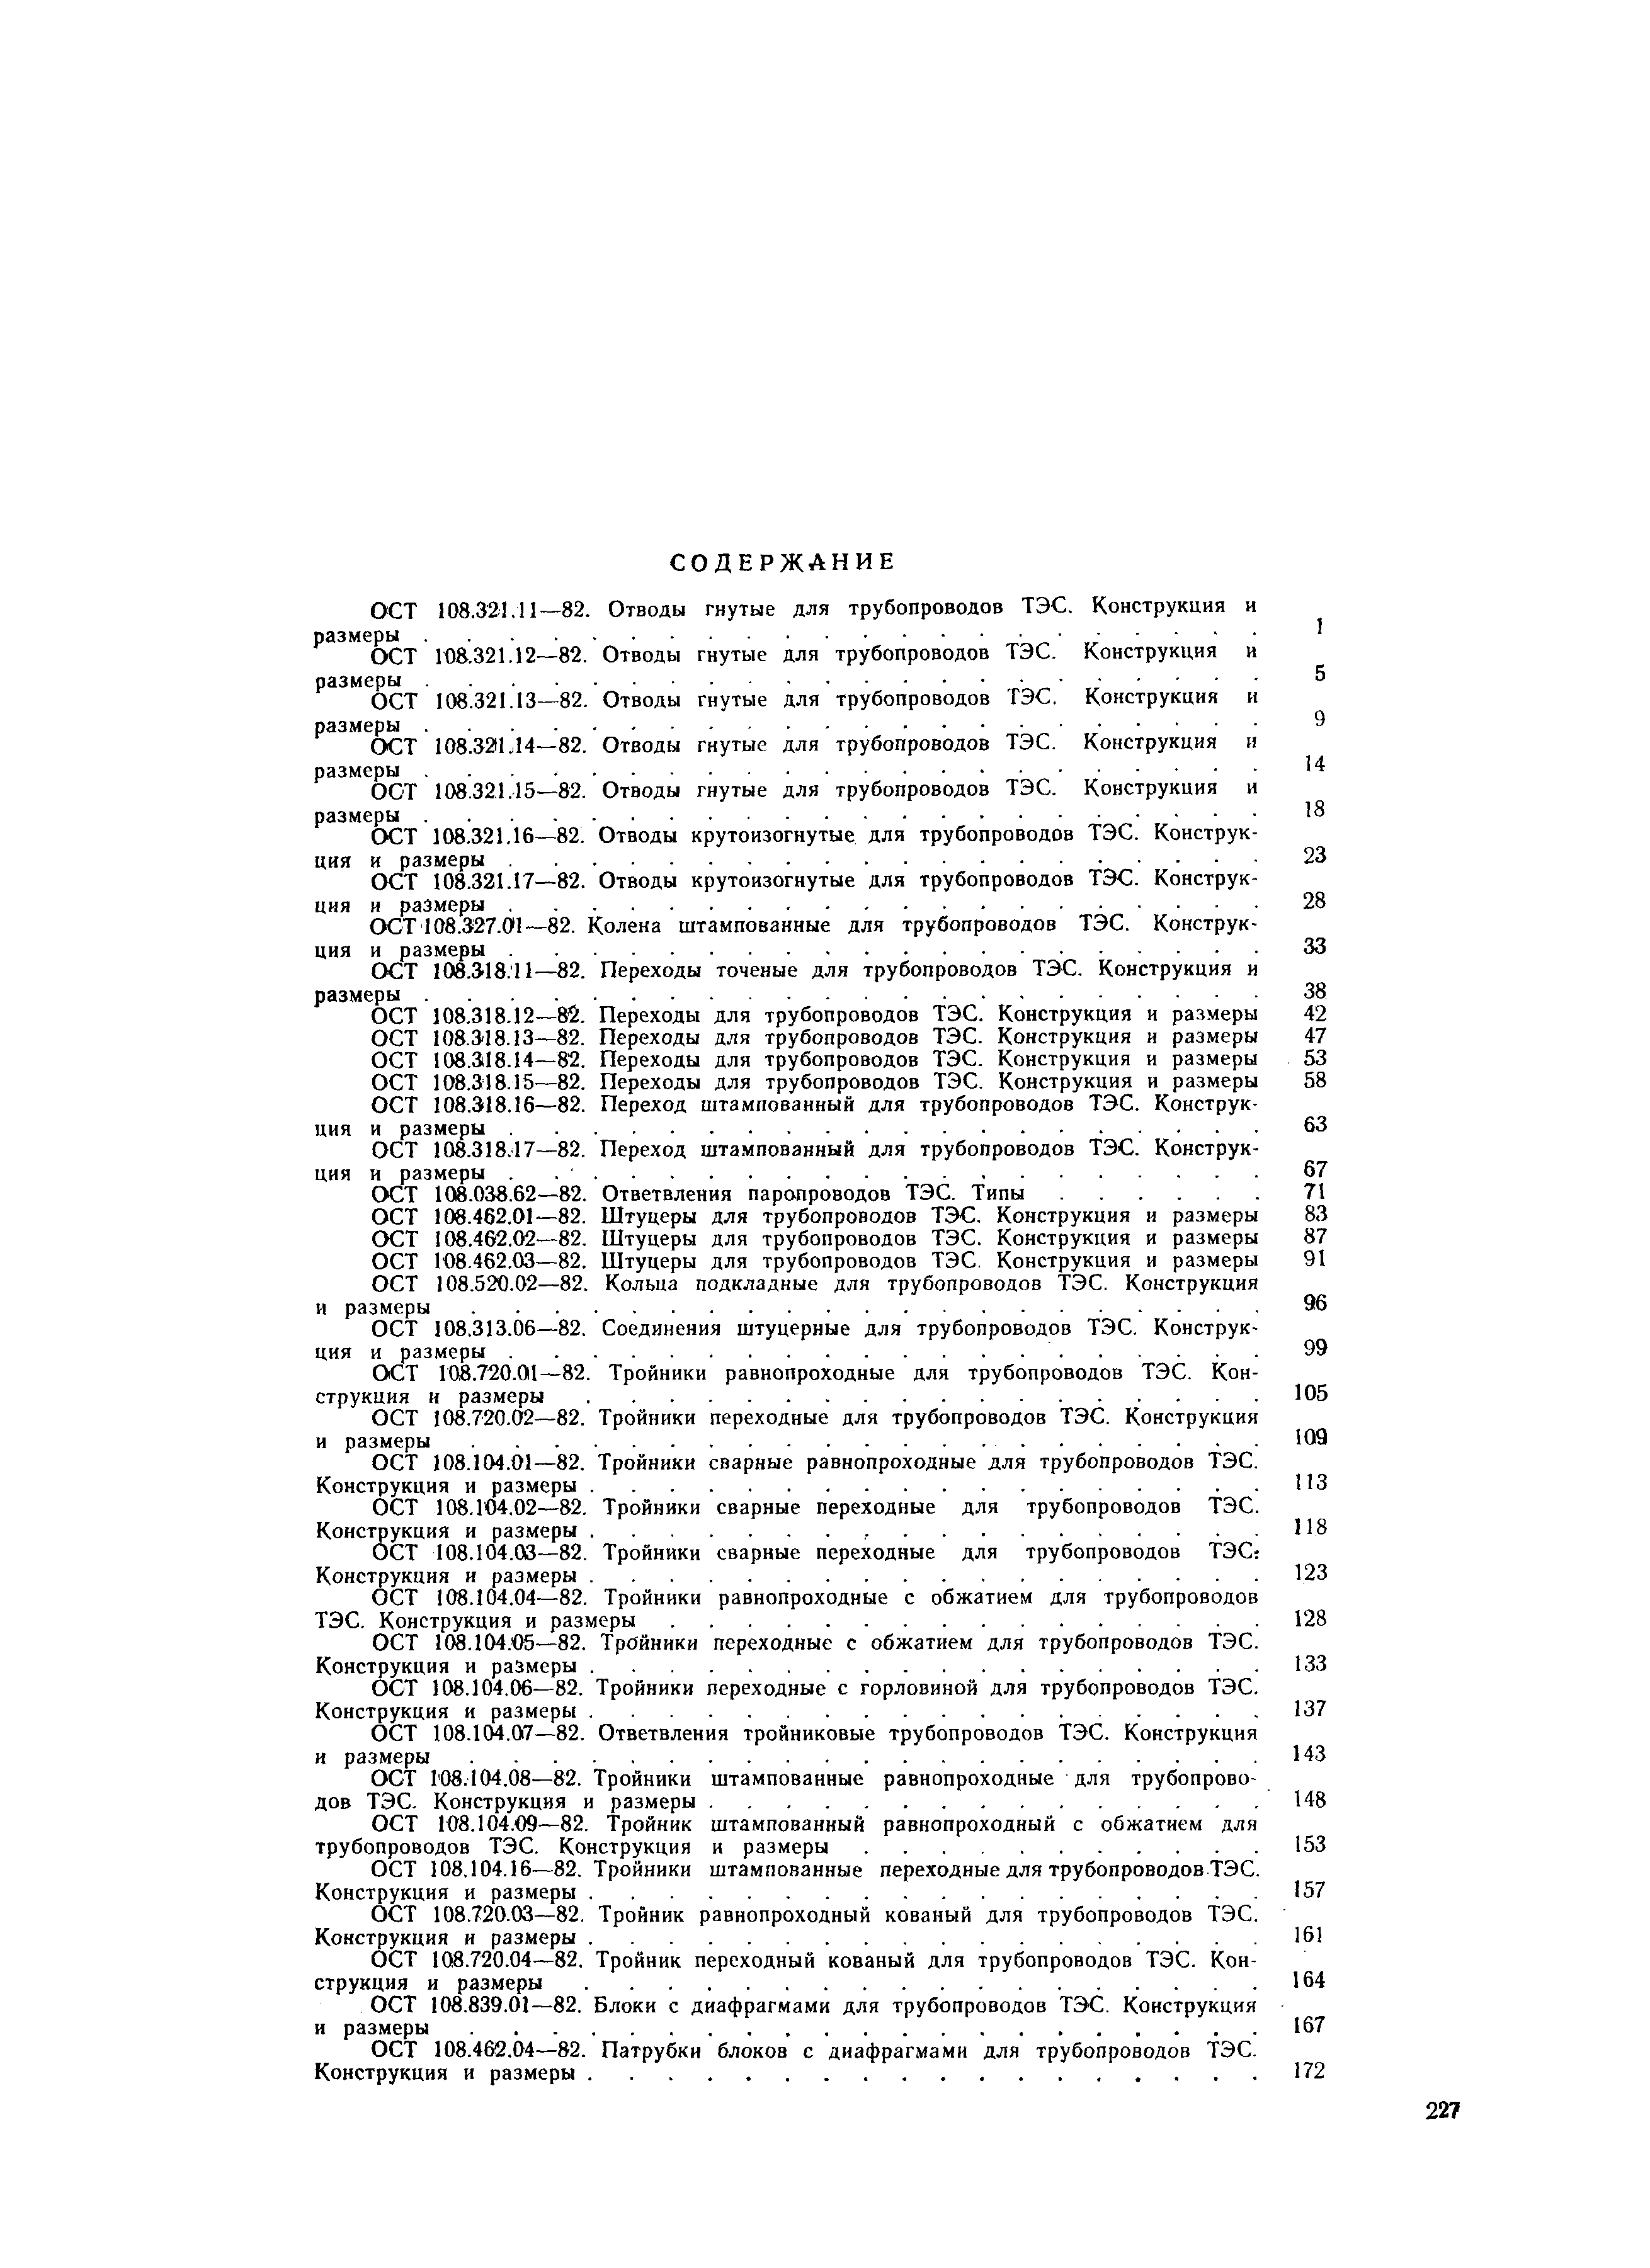 ОСТ 108.104.08-82